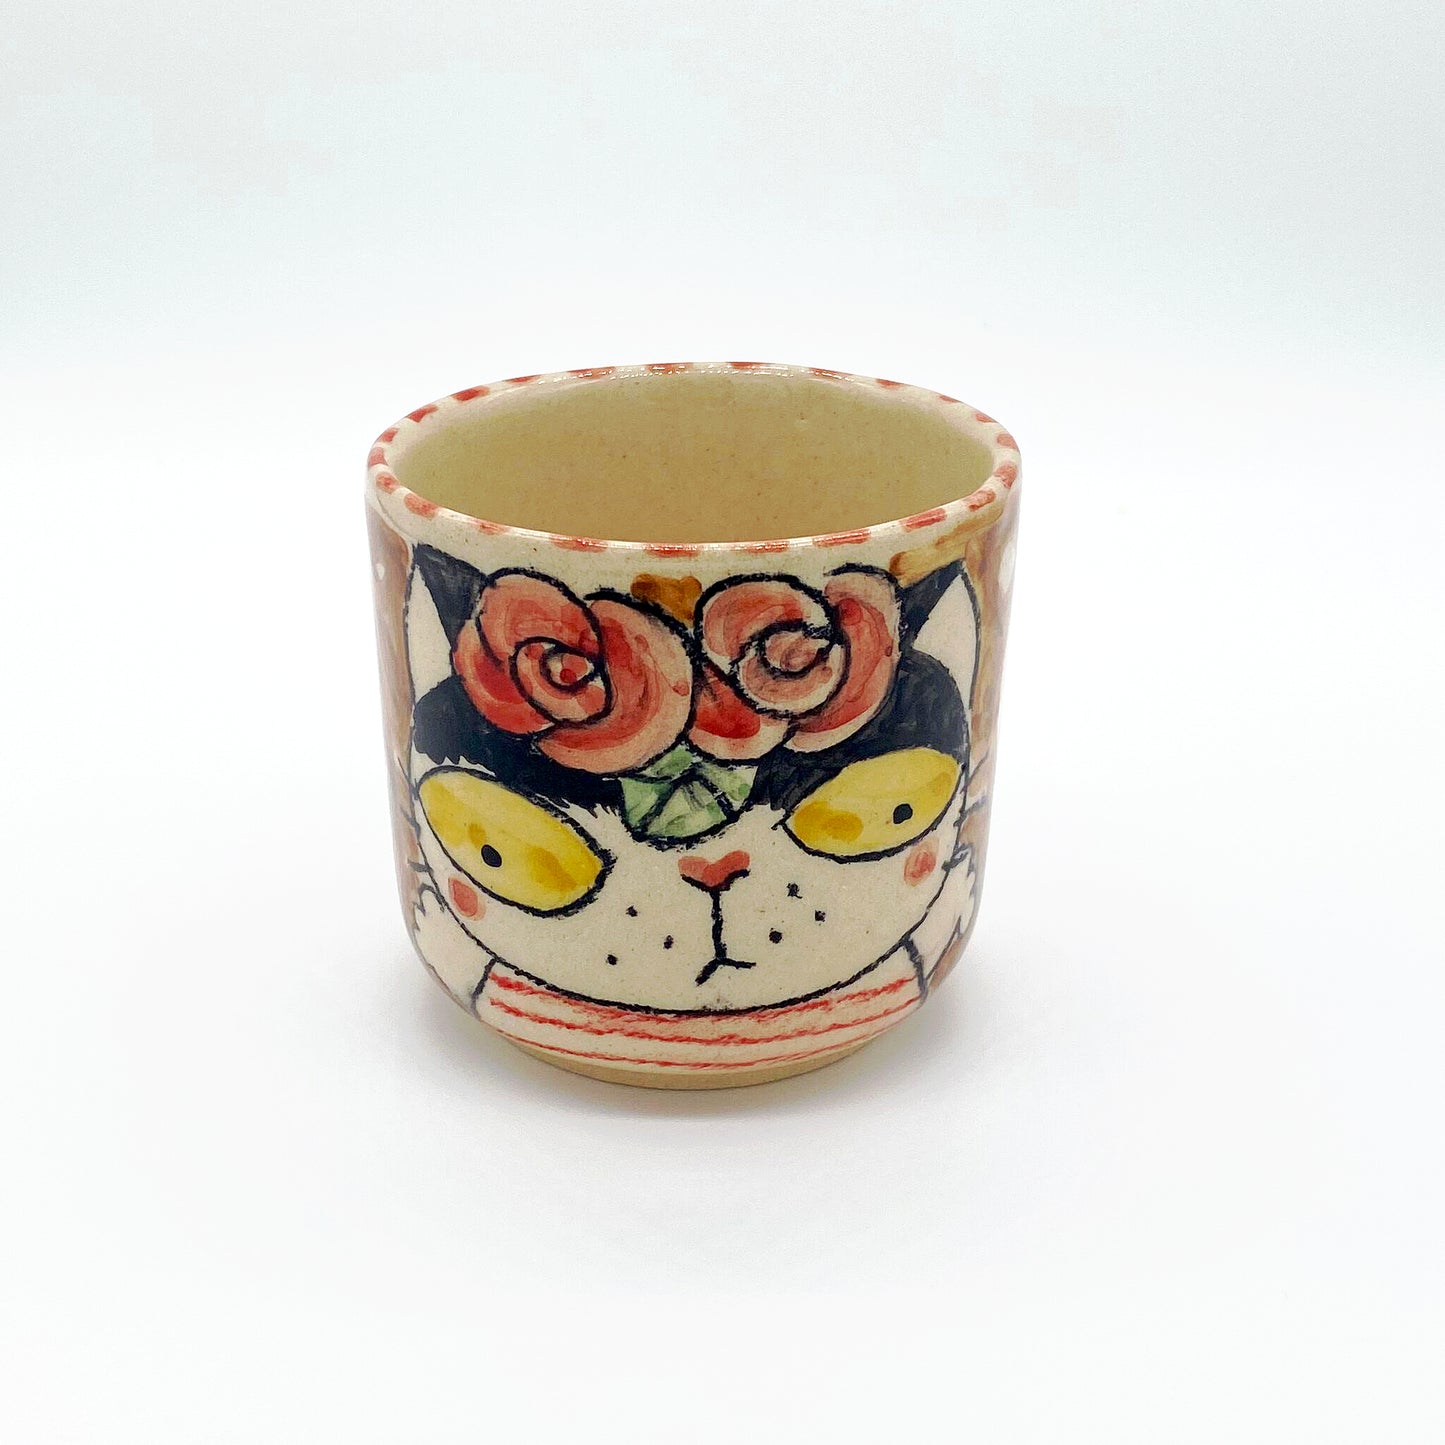 Ceramic tea cup with cat motif